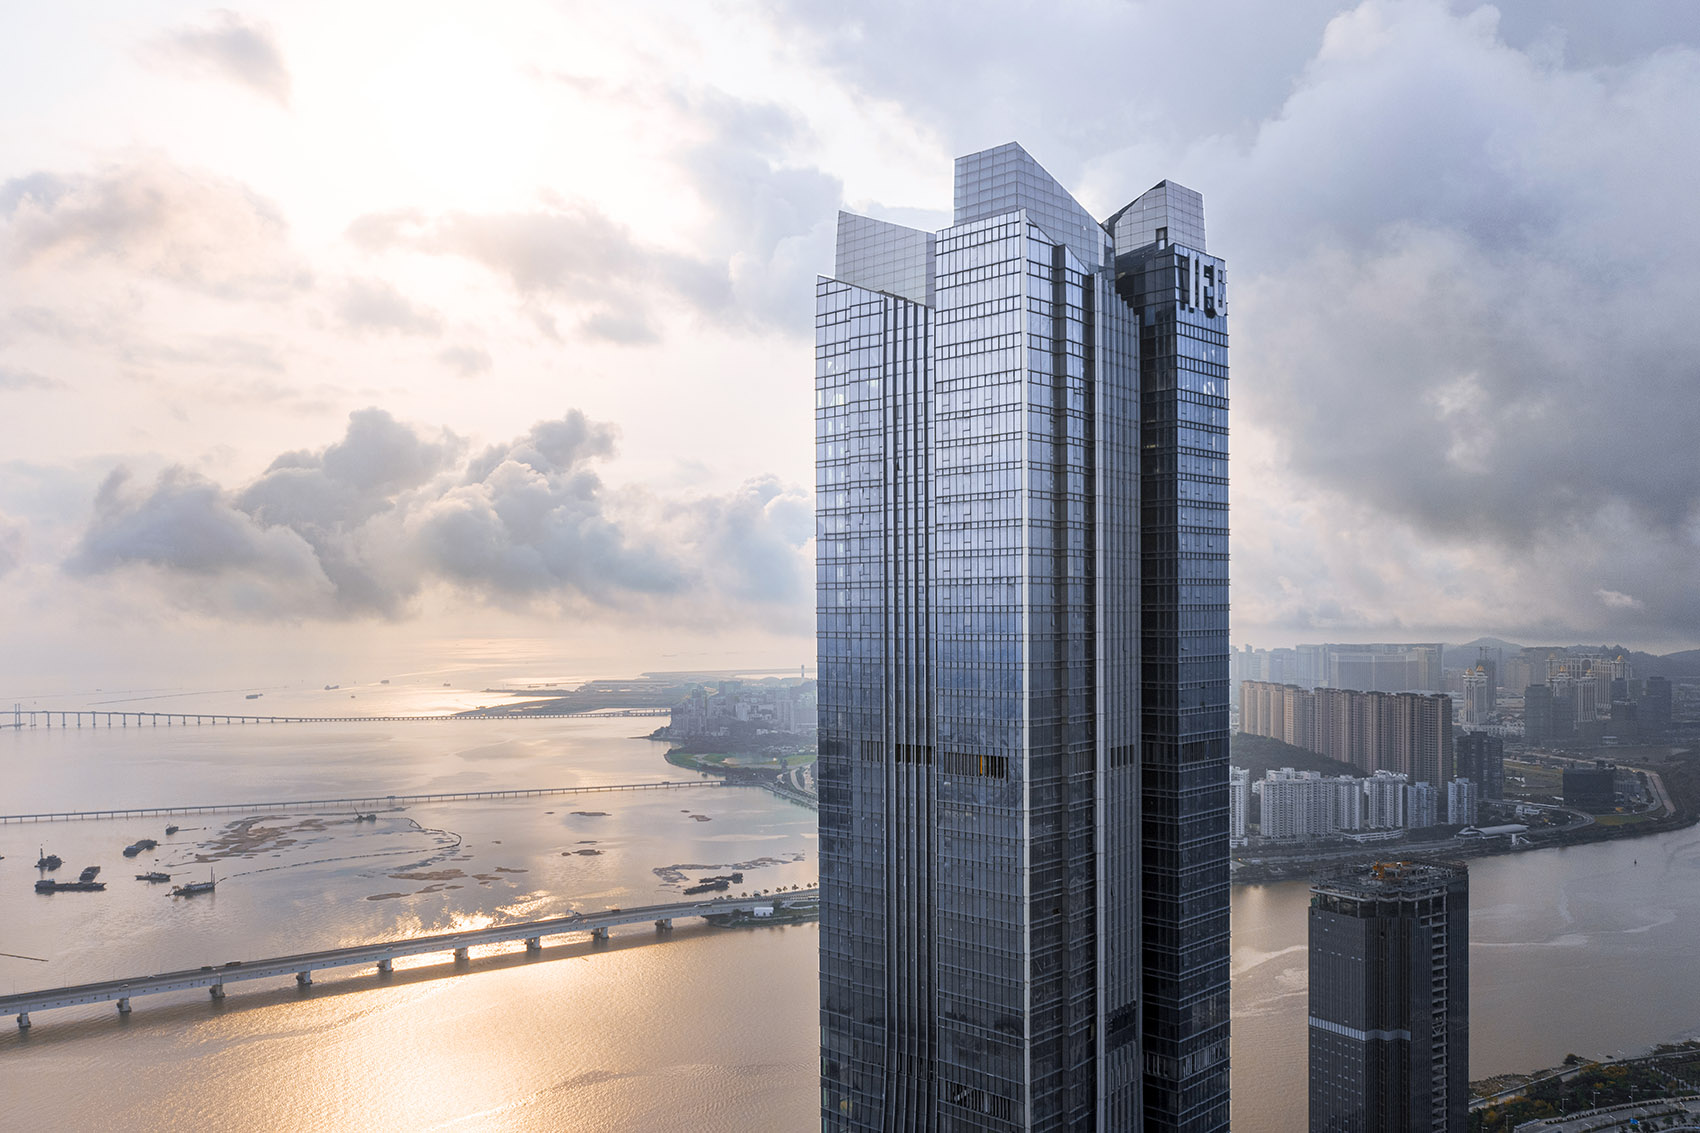 横琴国际金融中心，珠海/珠澳第一高楼，以蛟龙出海打造中国新力量-13